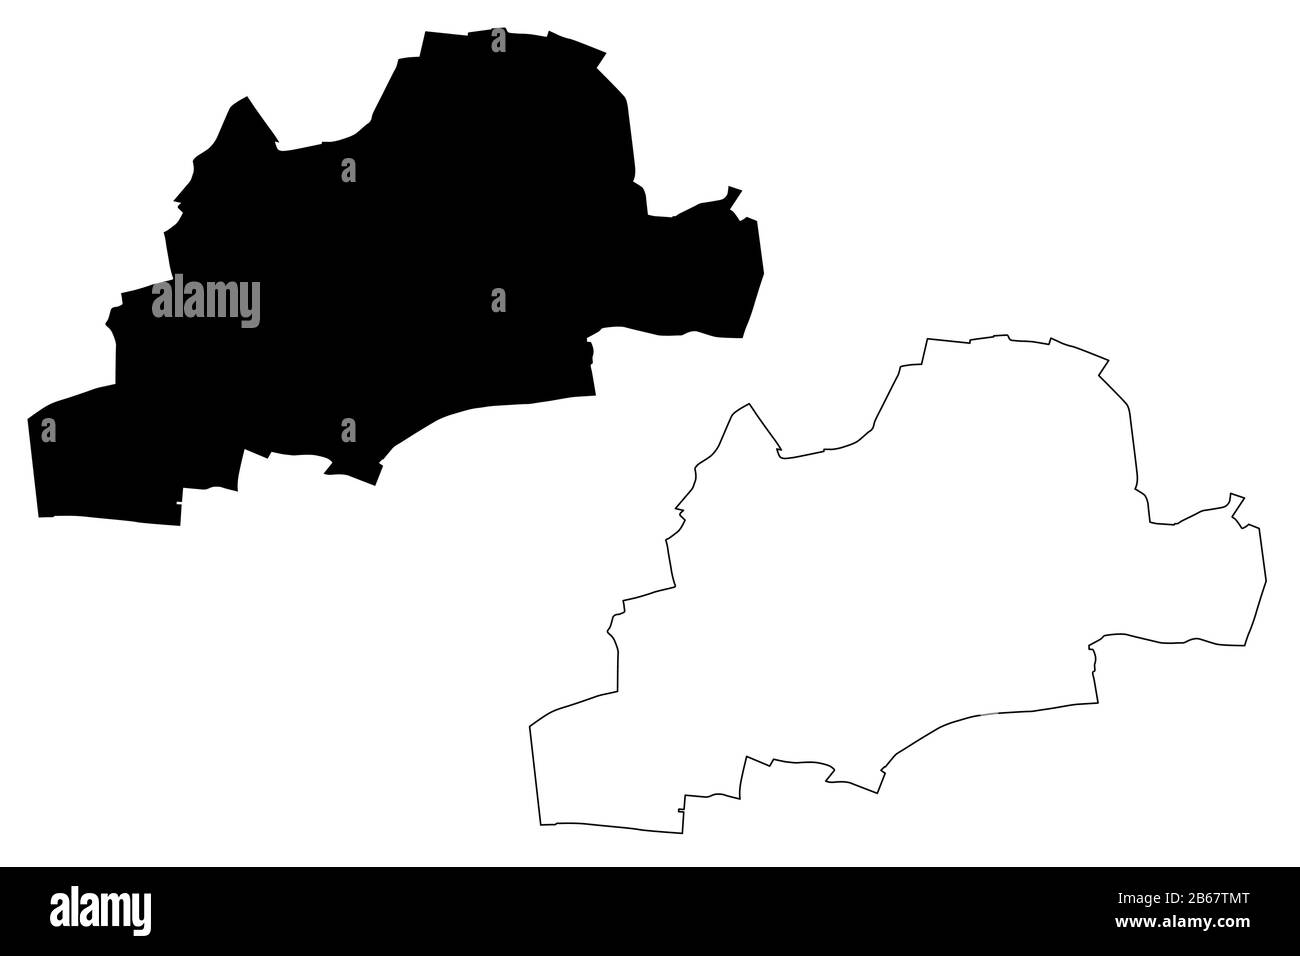 Ville de Montreuil (République française, France) illustration vectorielle cartographique, esquisse de griffonnage carte de la ville de Montreuil Illustration de Vecteur